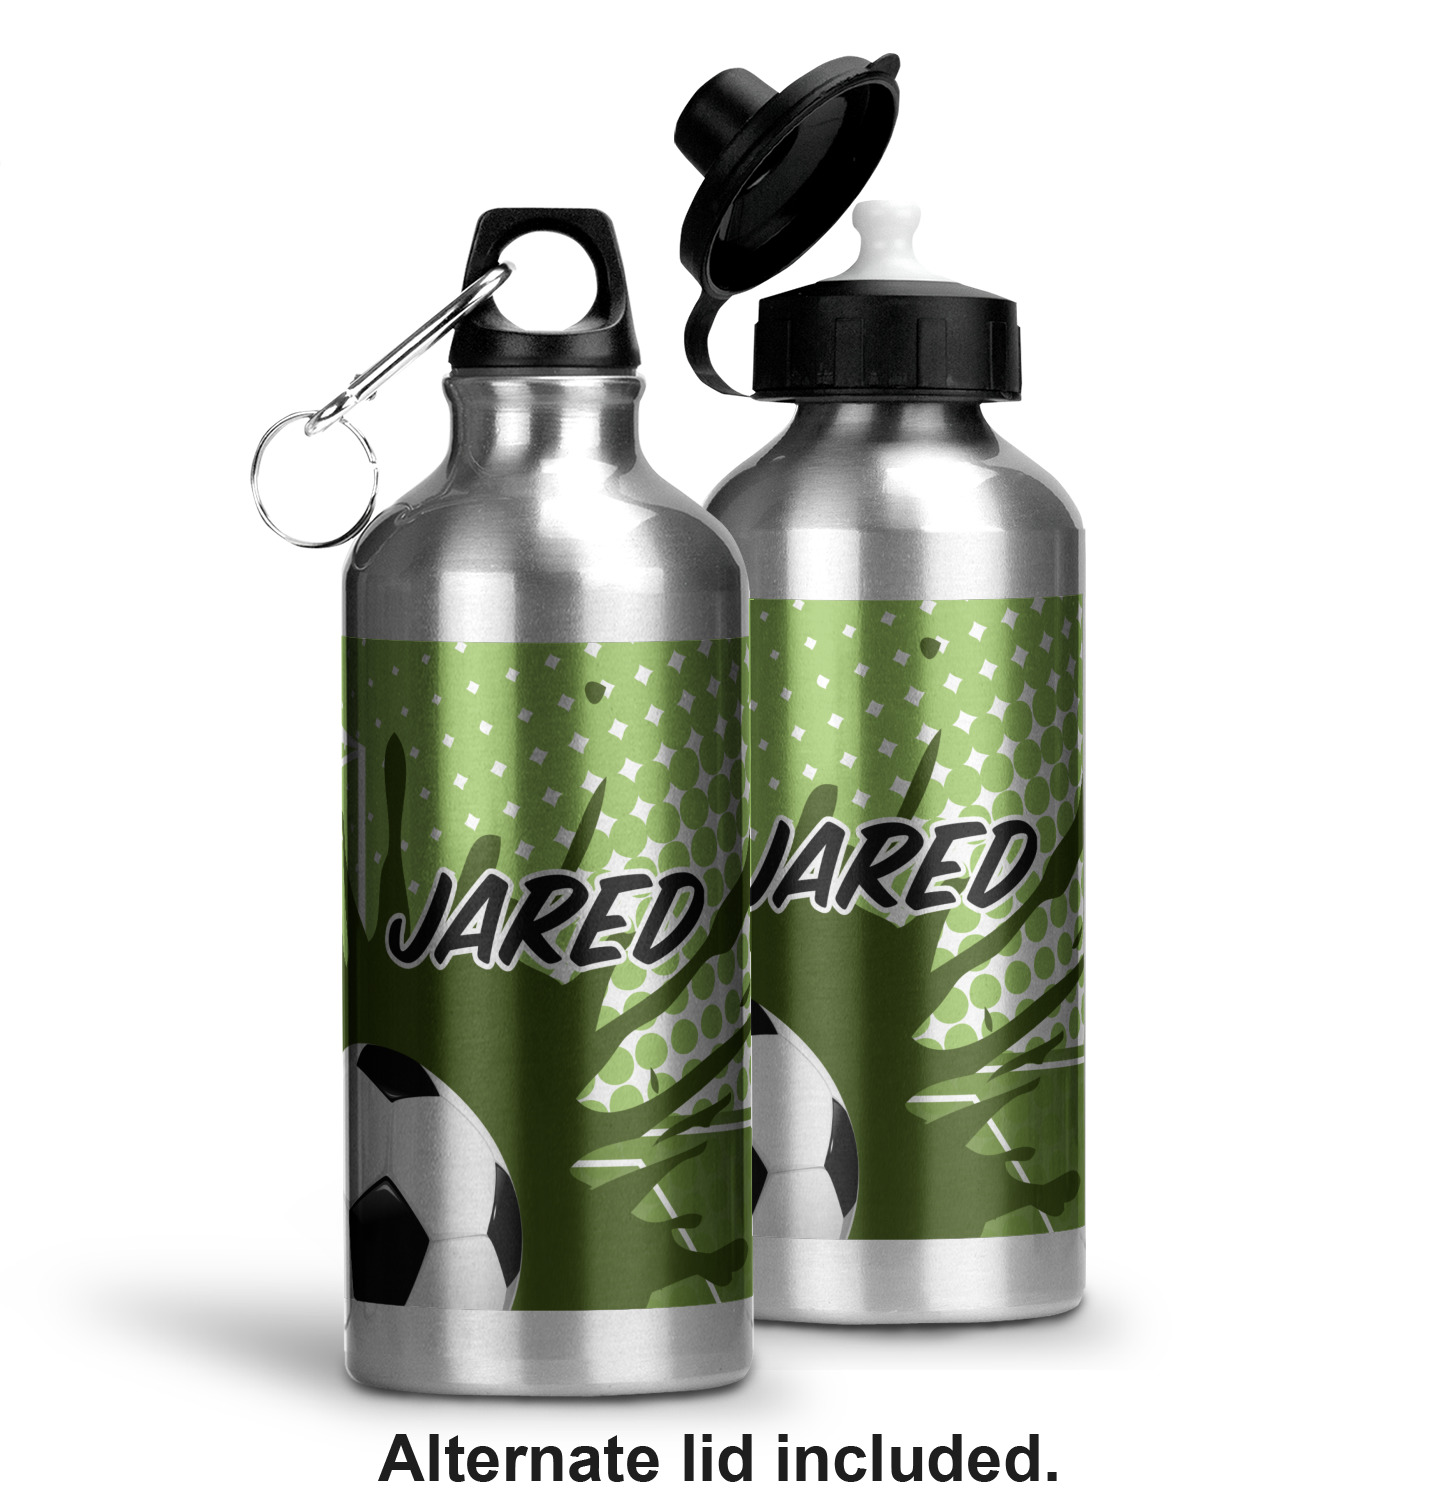 https://www.youcustomizeit.com/common/MAKE/1833419/Soccer-Aluminum-Water-Bottle-Alternate-lid-options-2.jpg?lm=1666199397